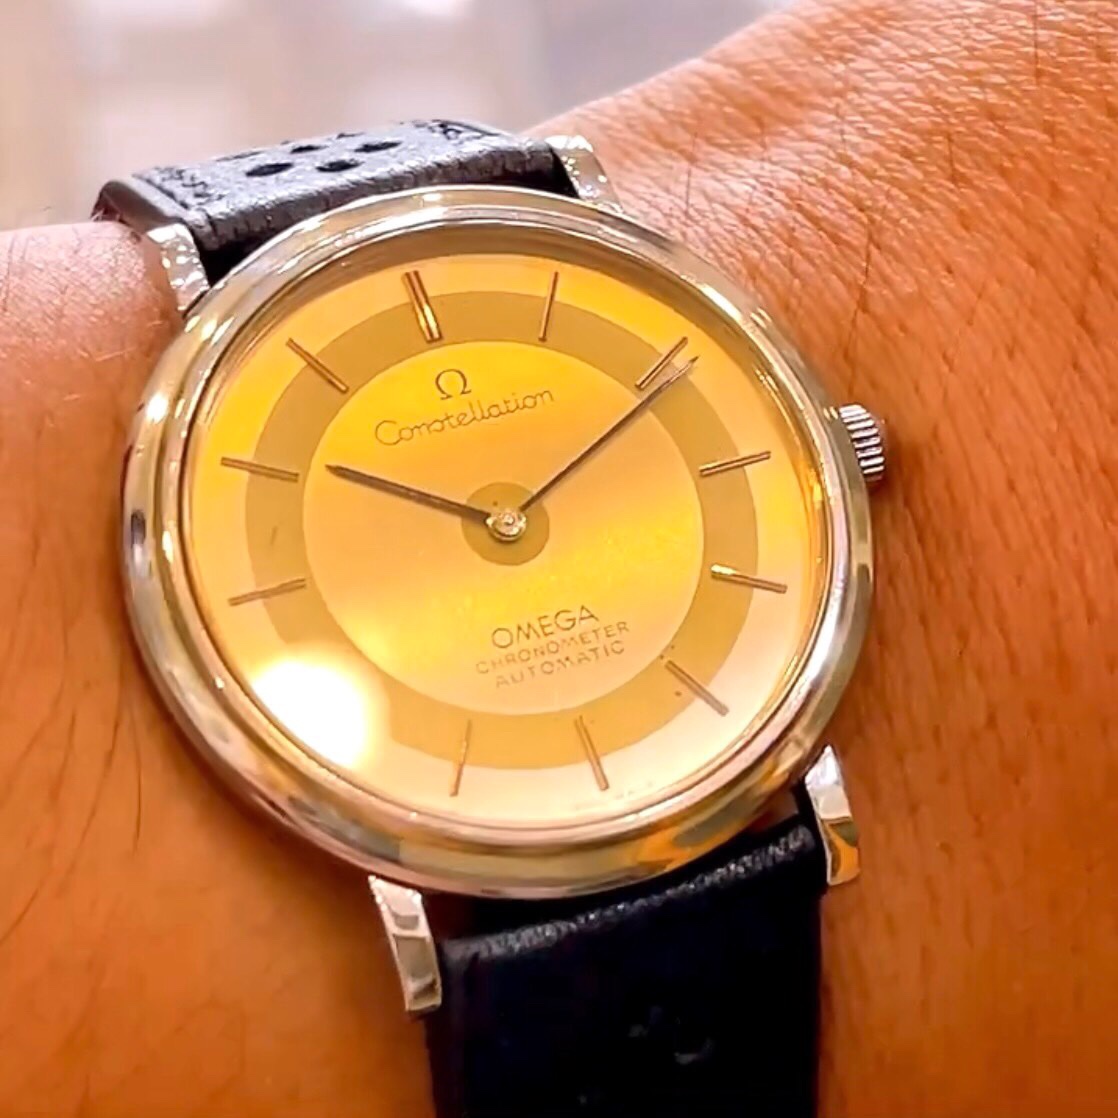 Đồng hồ cổ Omega Constellation Automatic chính hãng Thụy Sĩ